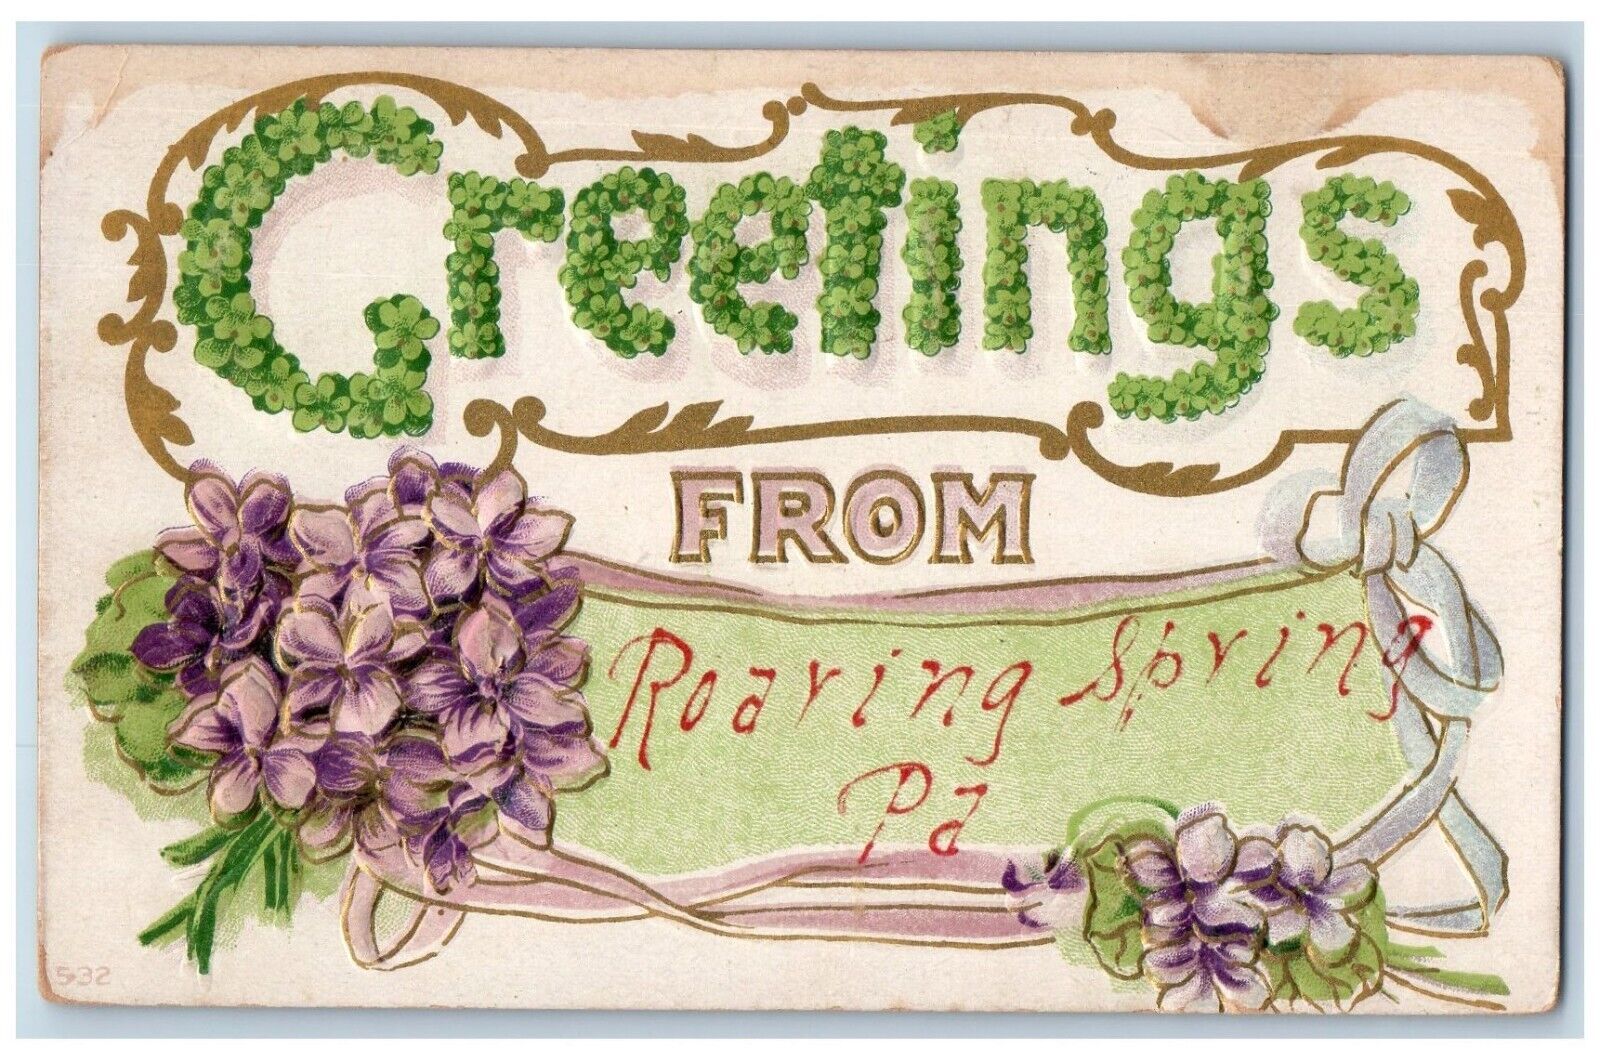 Roaring Spring Pennsylvania PA Postcard Greetings Flowers Embossed c1910 Vintage